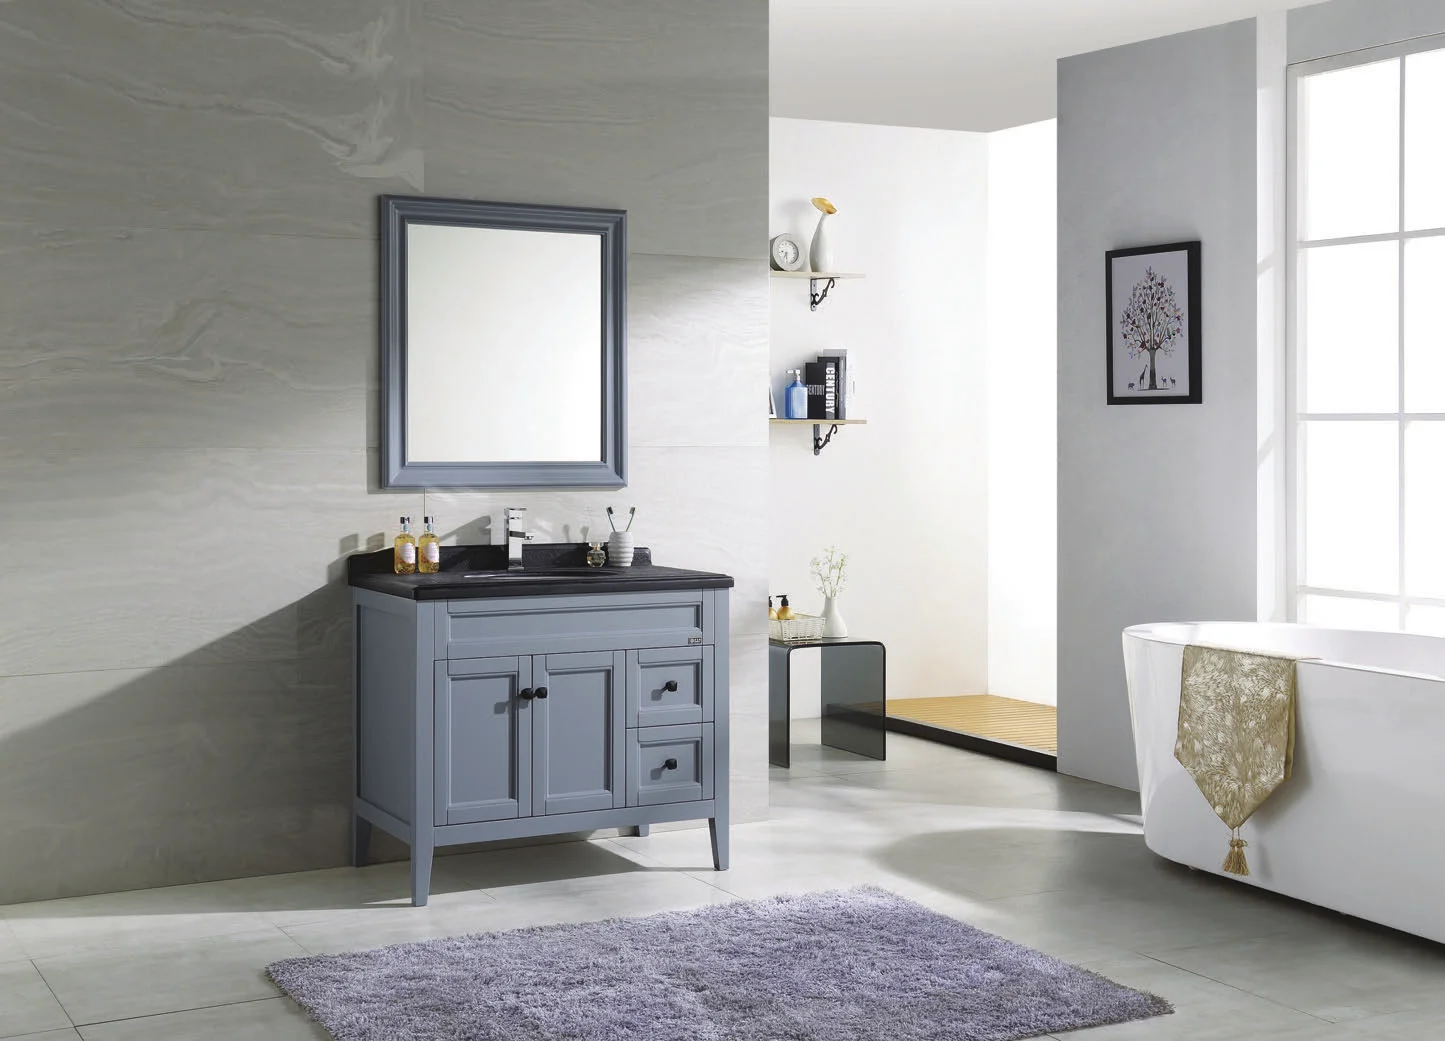 MS9003 new arrival european hot selling modern bathroom cabinet oak bathroom vanity